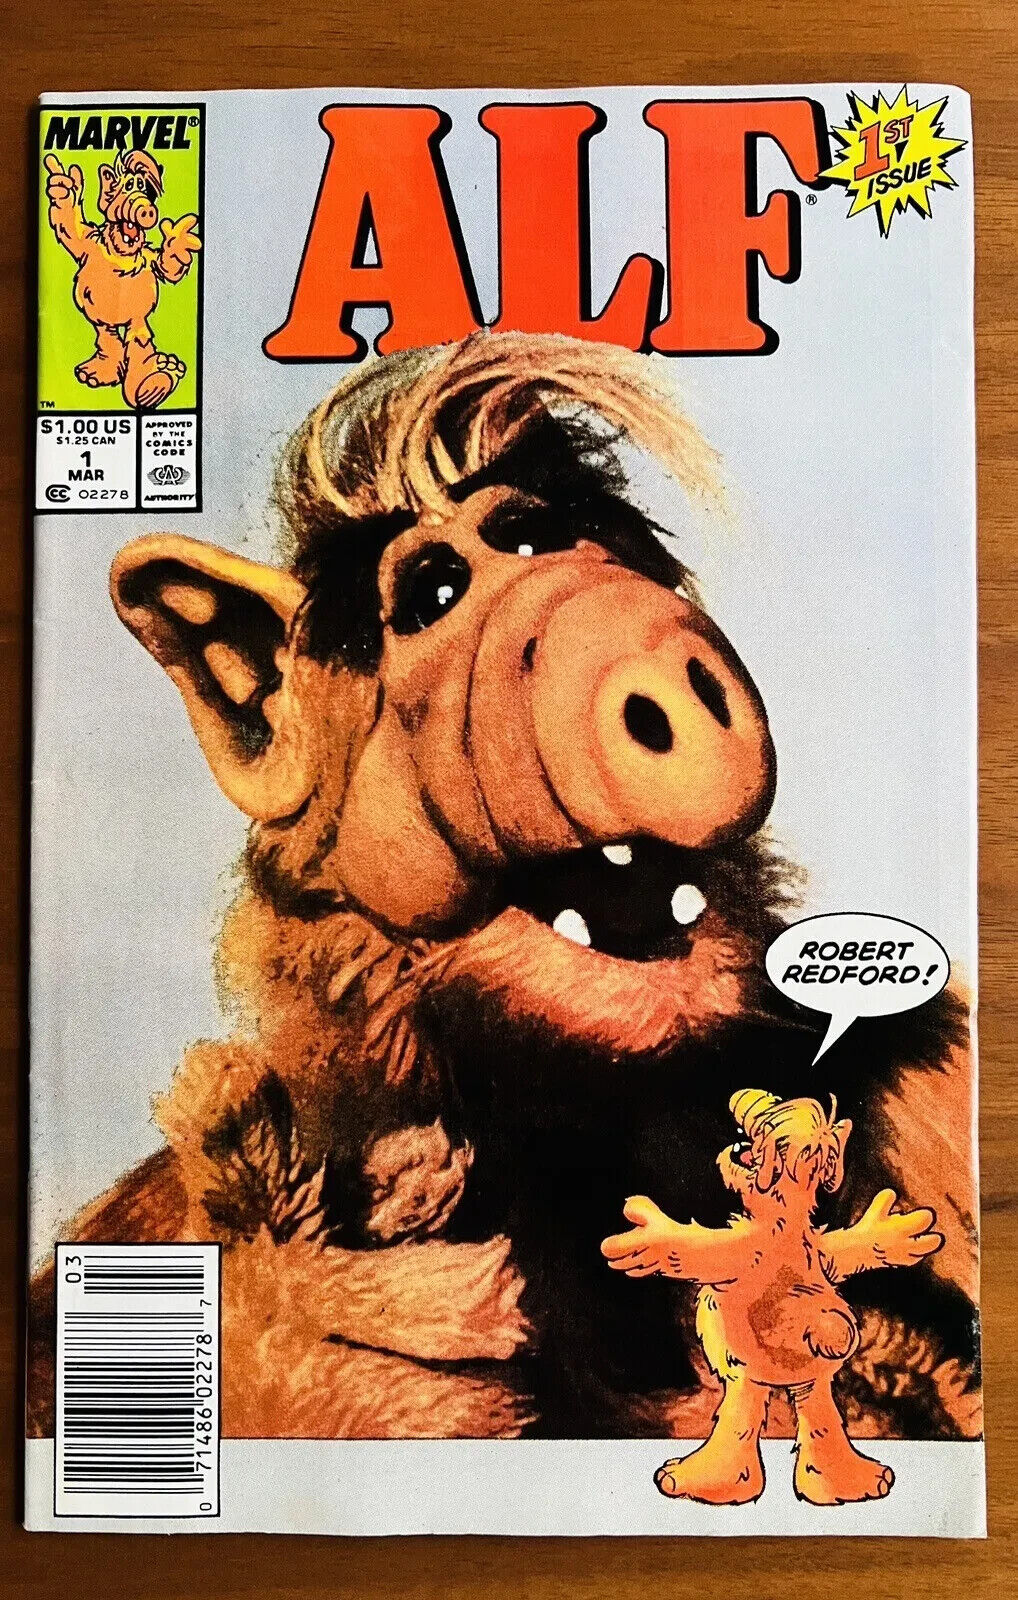 Alf 1st Issue #1, Marvel Comics 1988 Vintage Comic